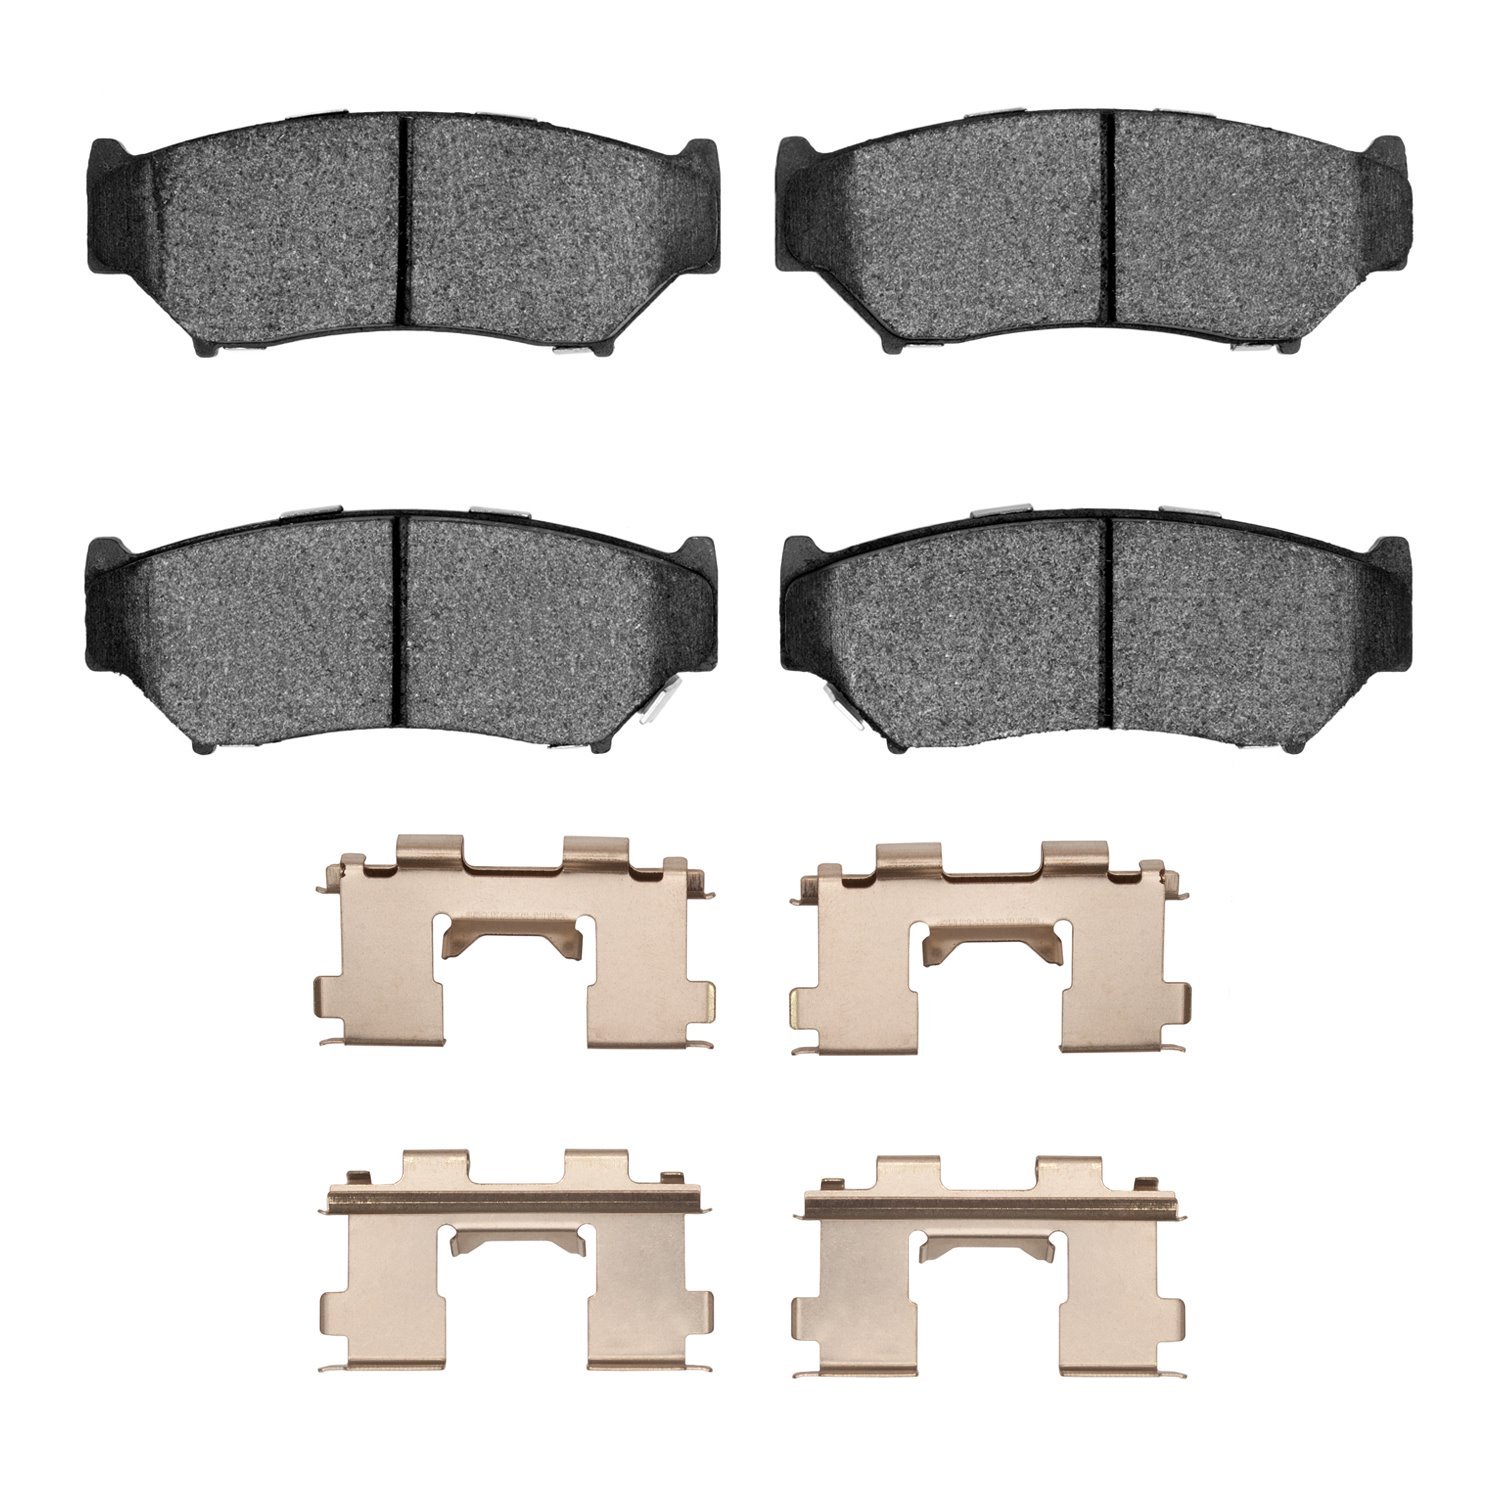 1310-0556-01 3000-Series Ceramic Brake Pads & Hardware Kit, 1991-2004 GM, Position: Front